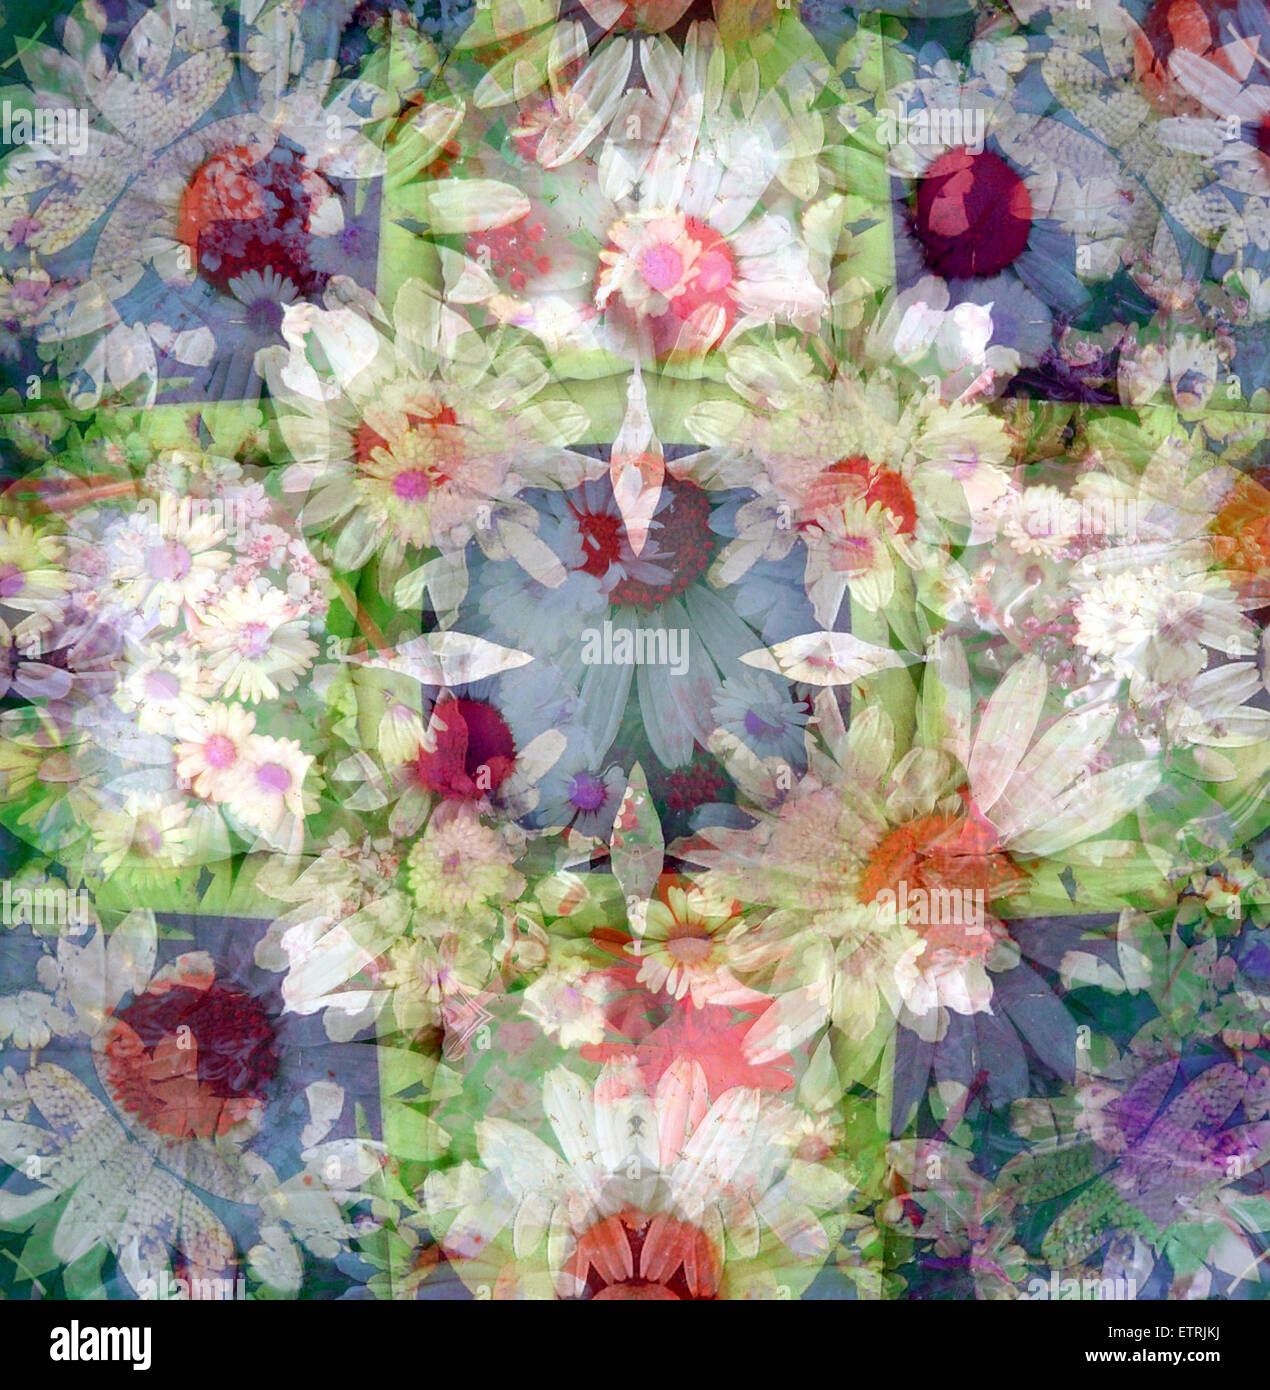 A symmetric Floral Montage. Stock Photo